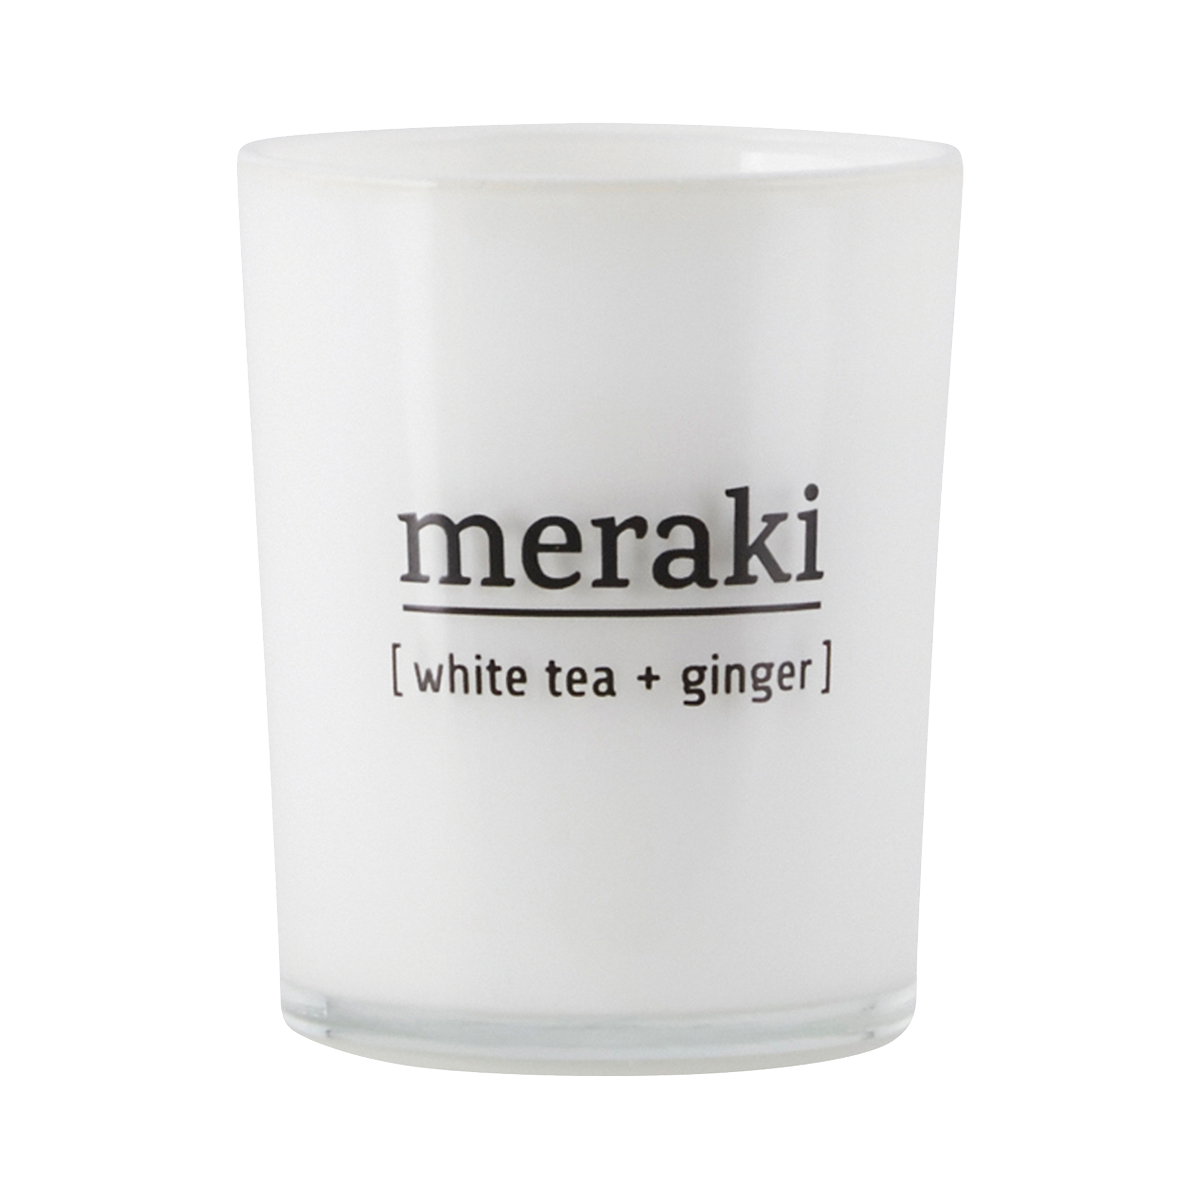 Billede af Meraki Duftlys White tea & ginger, Dm.: 5,5 cm, H.: 6,7 cm. hos Ren-velvaereshop.dk